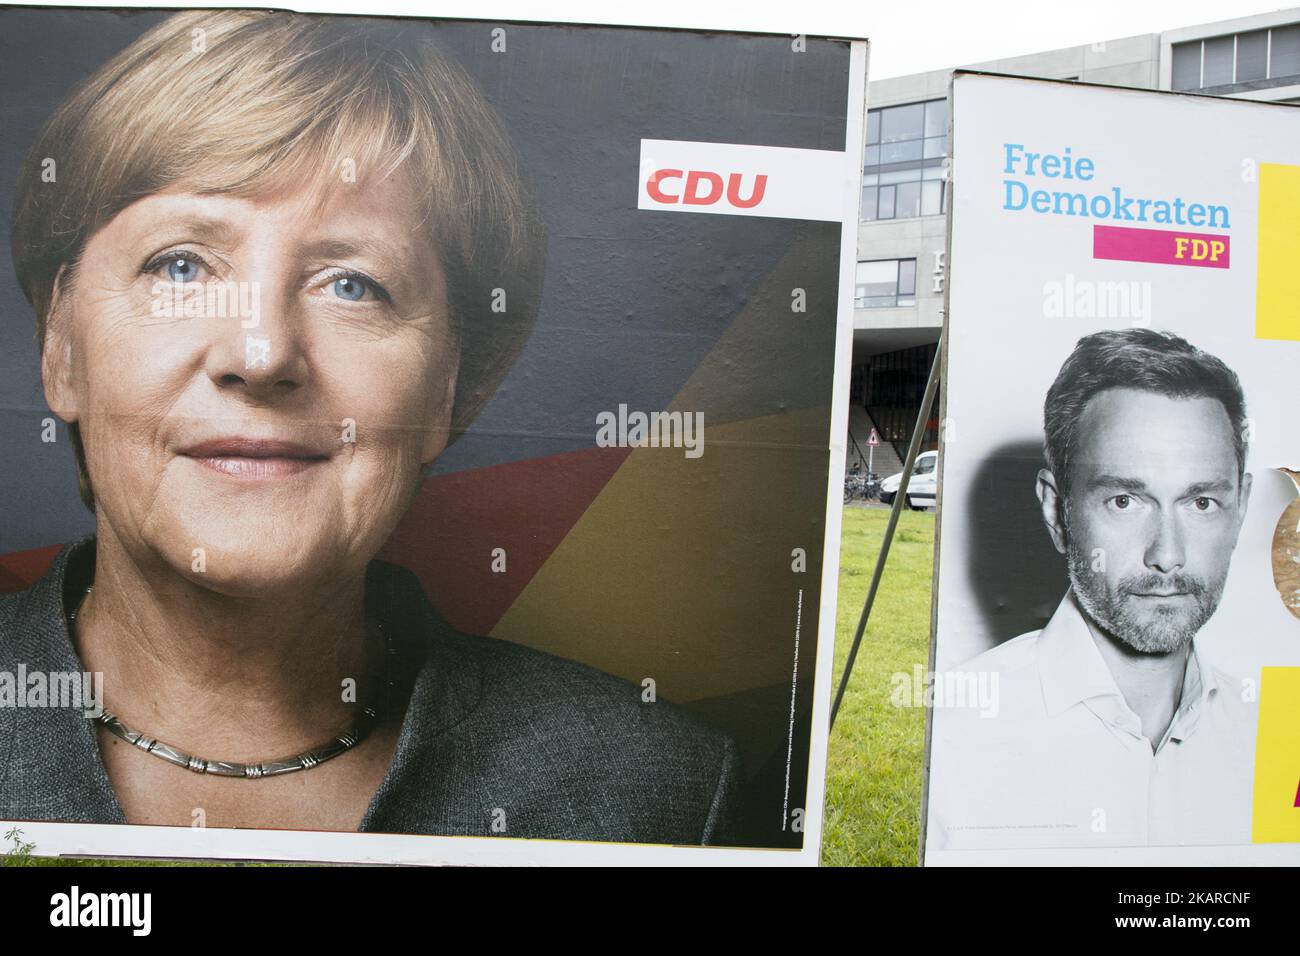 Des affiches électorales montrant la chancelière allemande Angela Merkel (CDU) et le principal candidat du Parti démocratique libre (FDP) Christian Lindner sont visibles dans le district de Kreuzberg à Berlin, en Allemagne, sur 21 septembre 2017. (Photo par Emmanuele Contini/NurPhoto) Banque D'Images